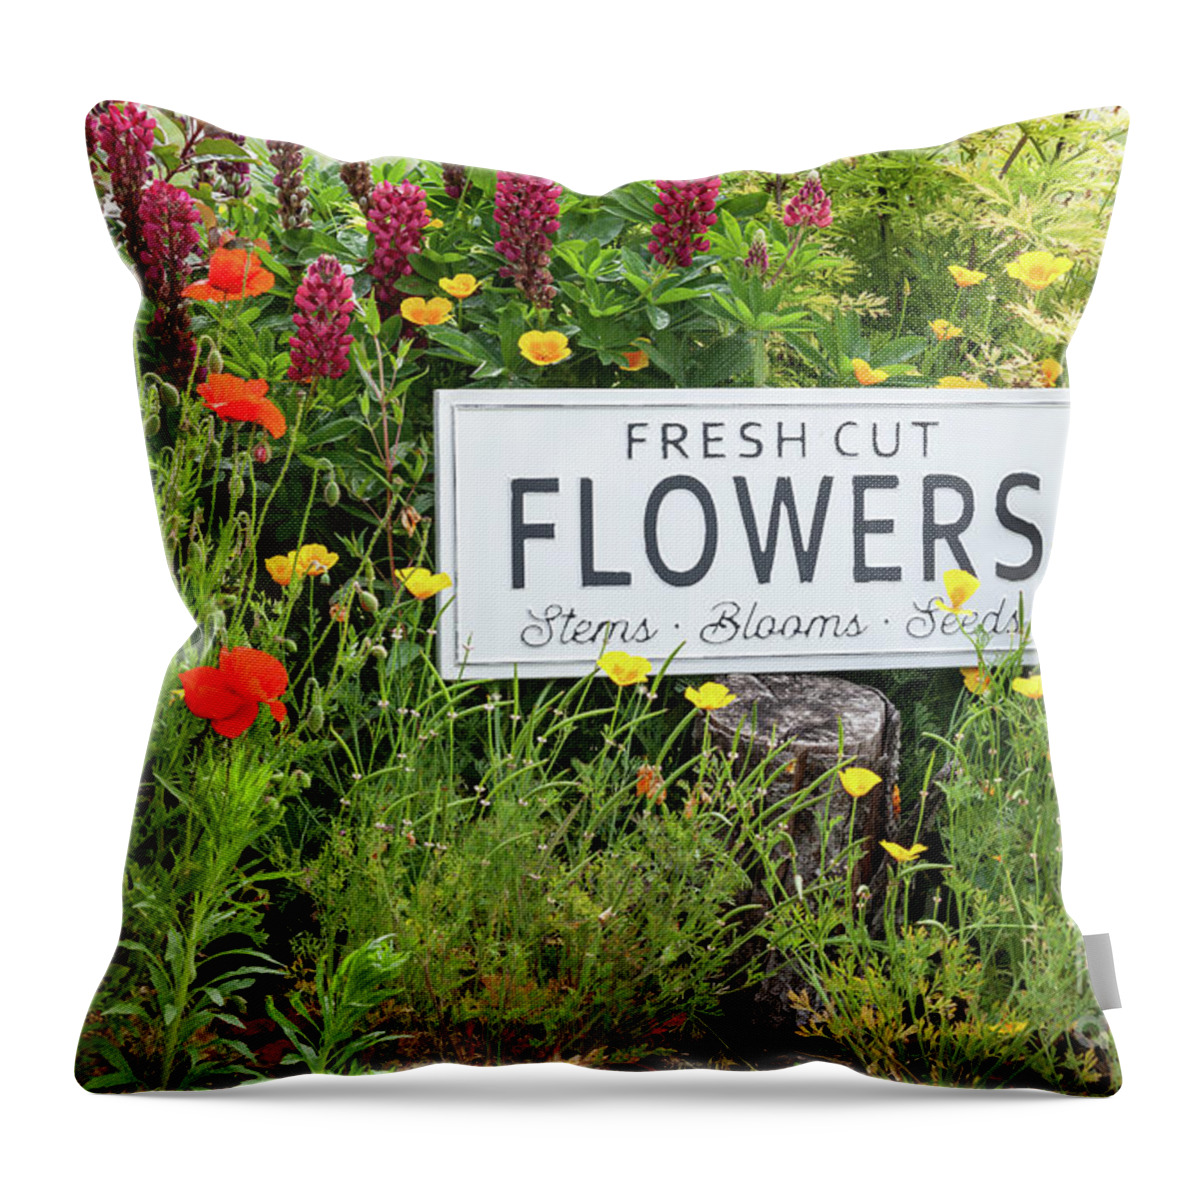 Arrangement Throw Pillow featuring the photograph Garden flowers with fresh cut flower sign 0771 by Simon Bratt